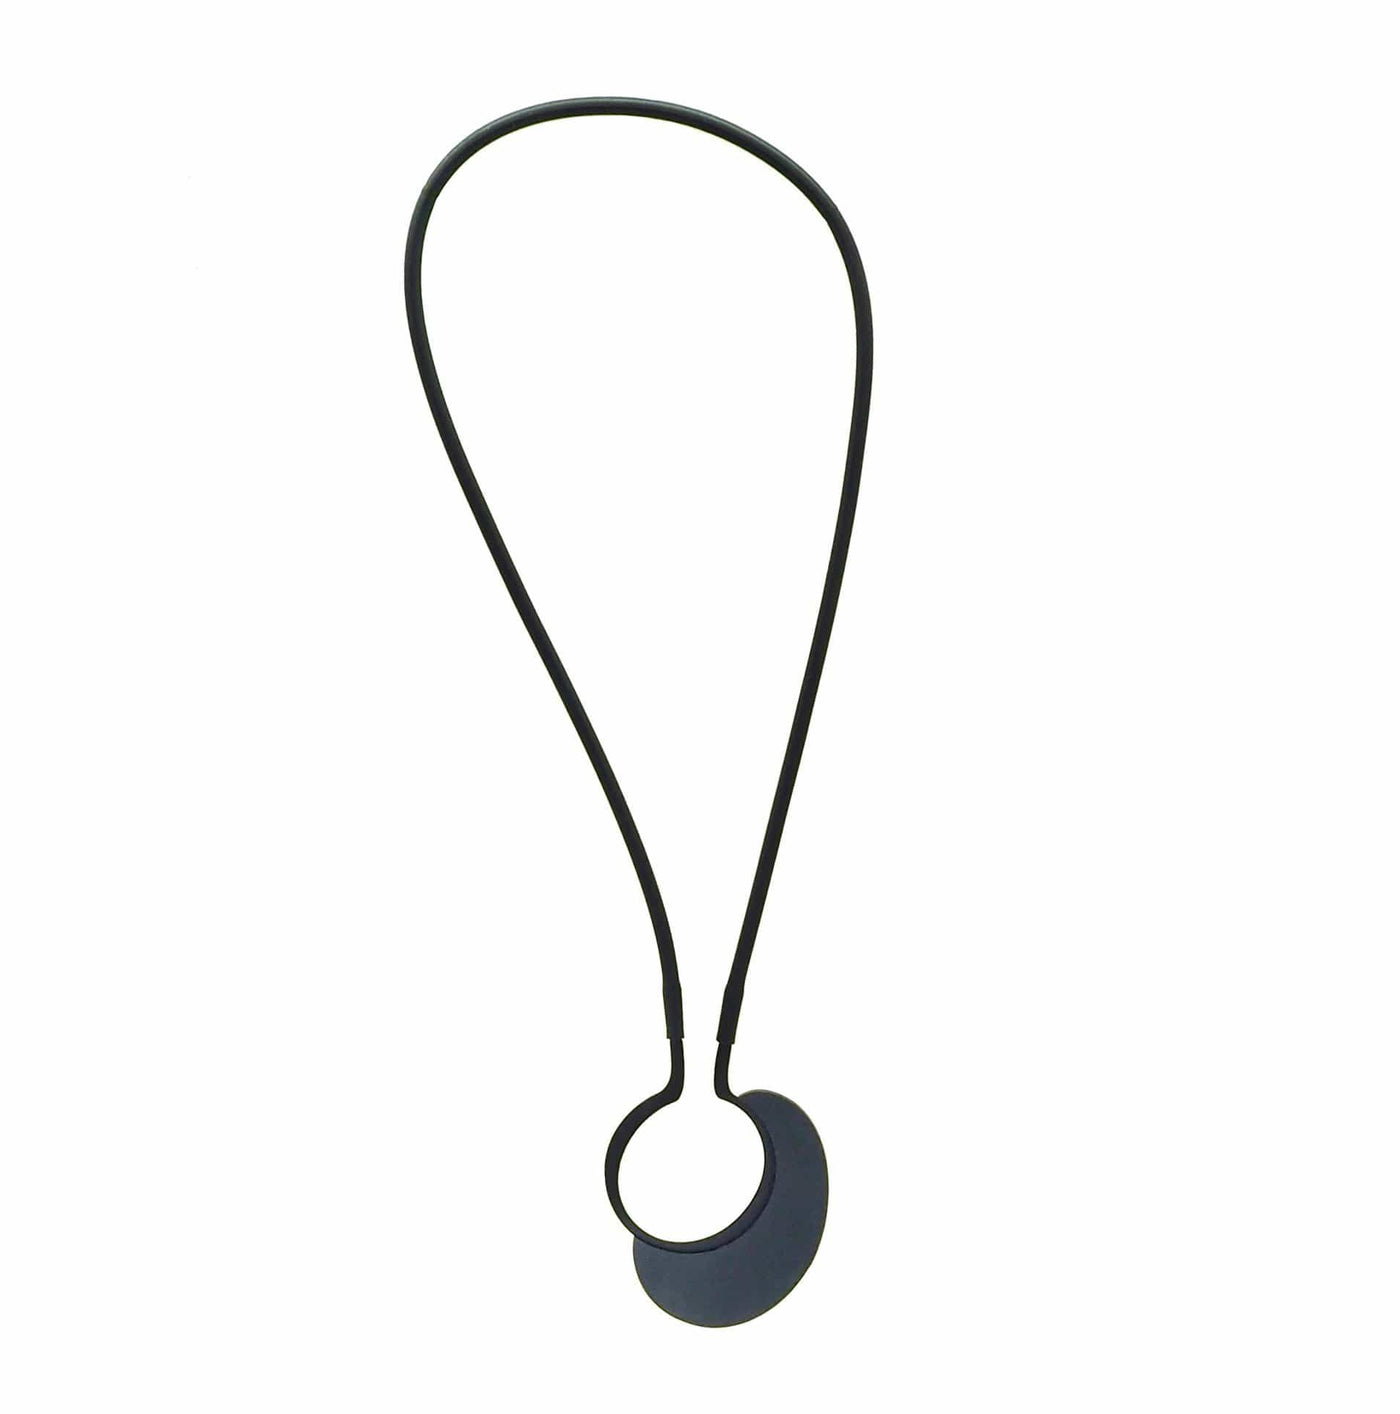 Contour Pebble Necklace - Mauve - inSync design